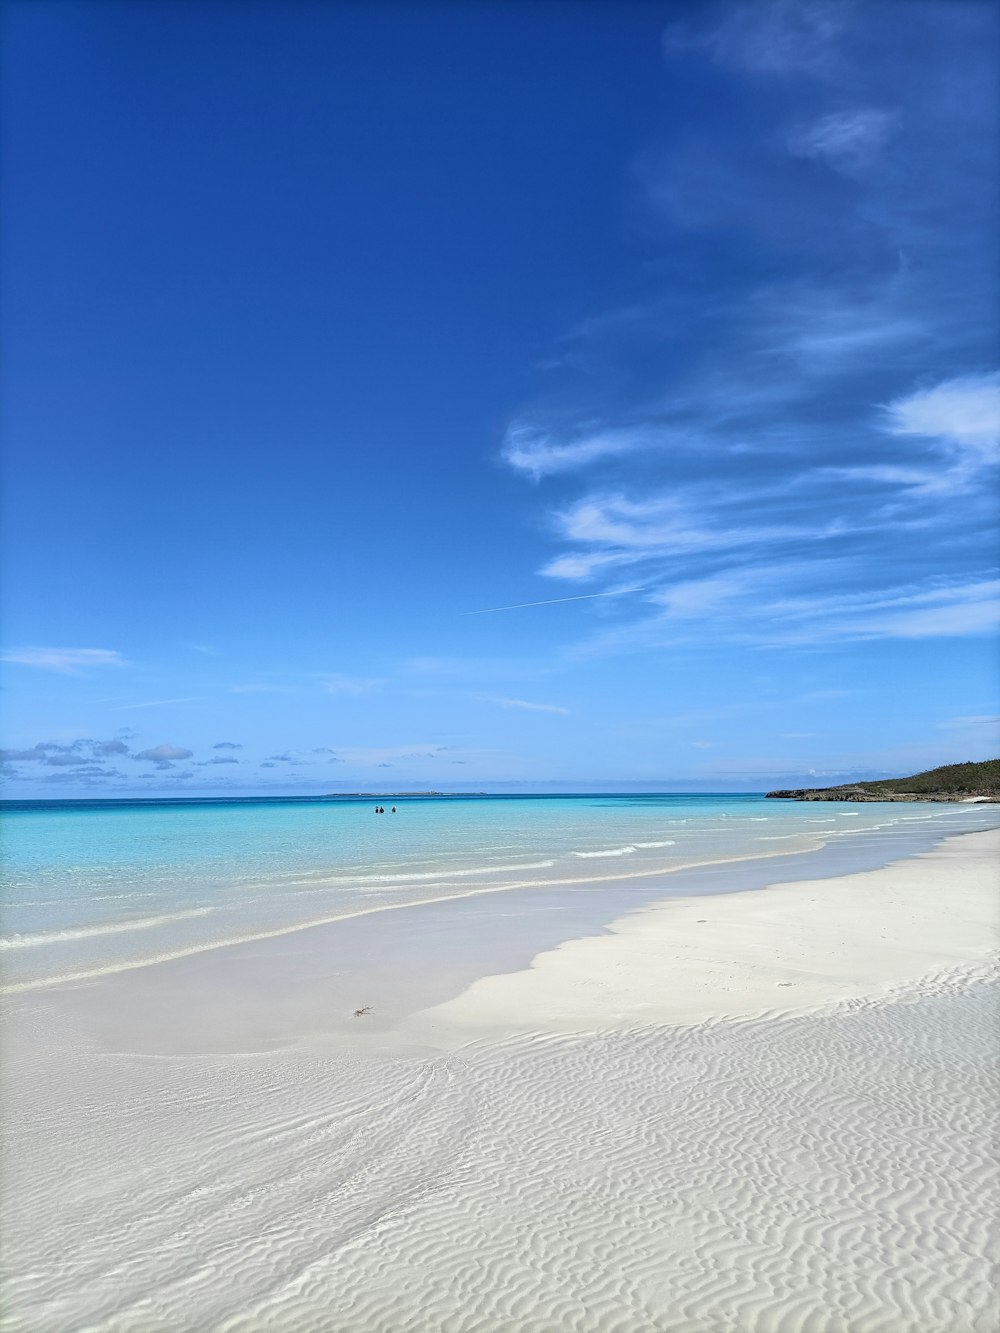 una playa de arena con agua azul clara y un barco en la distancia